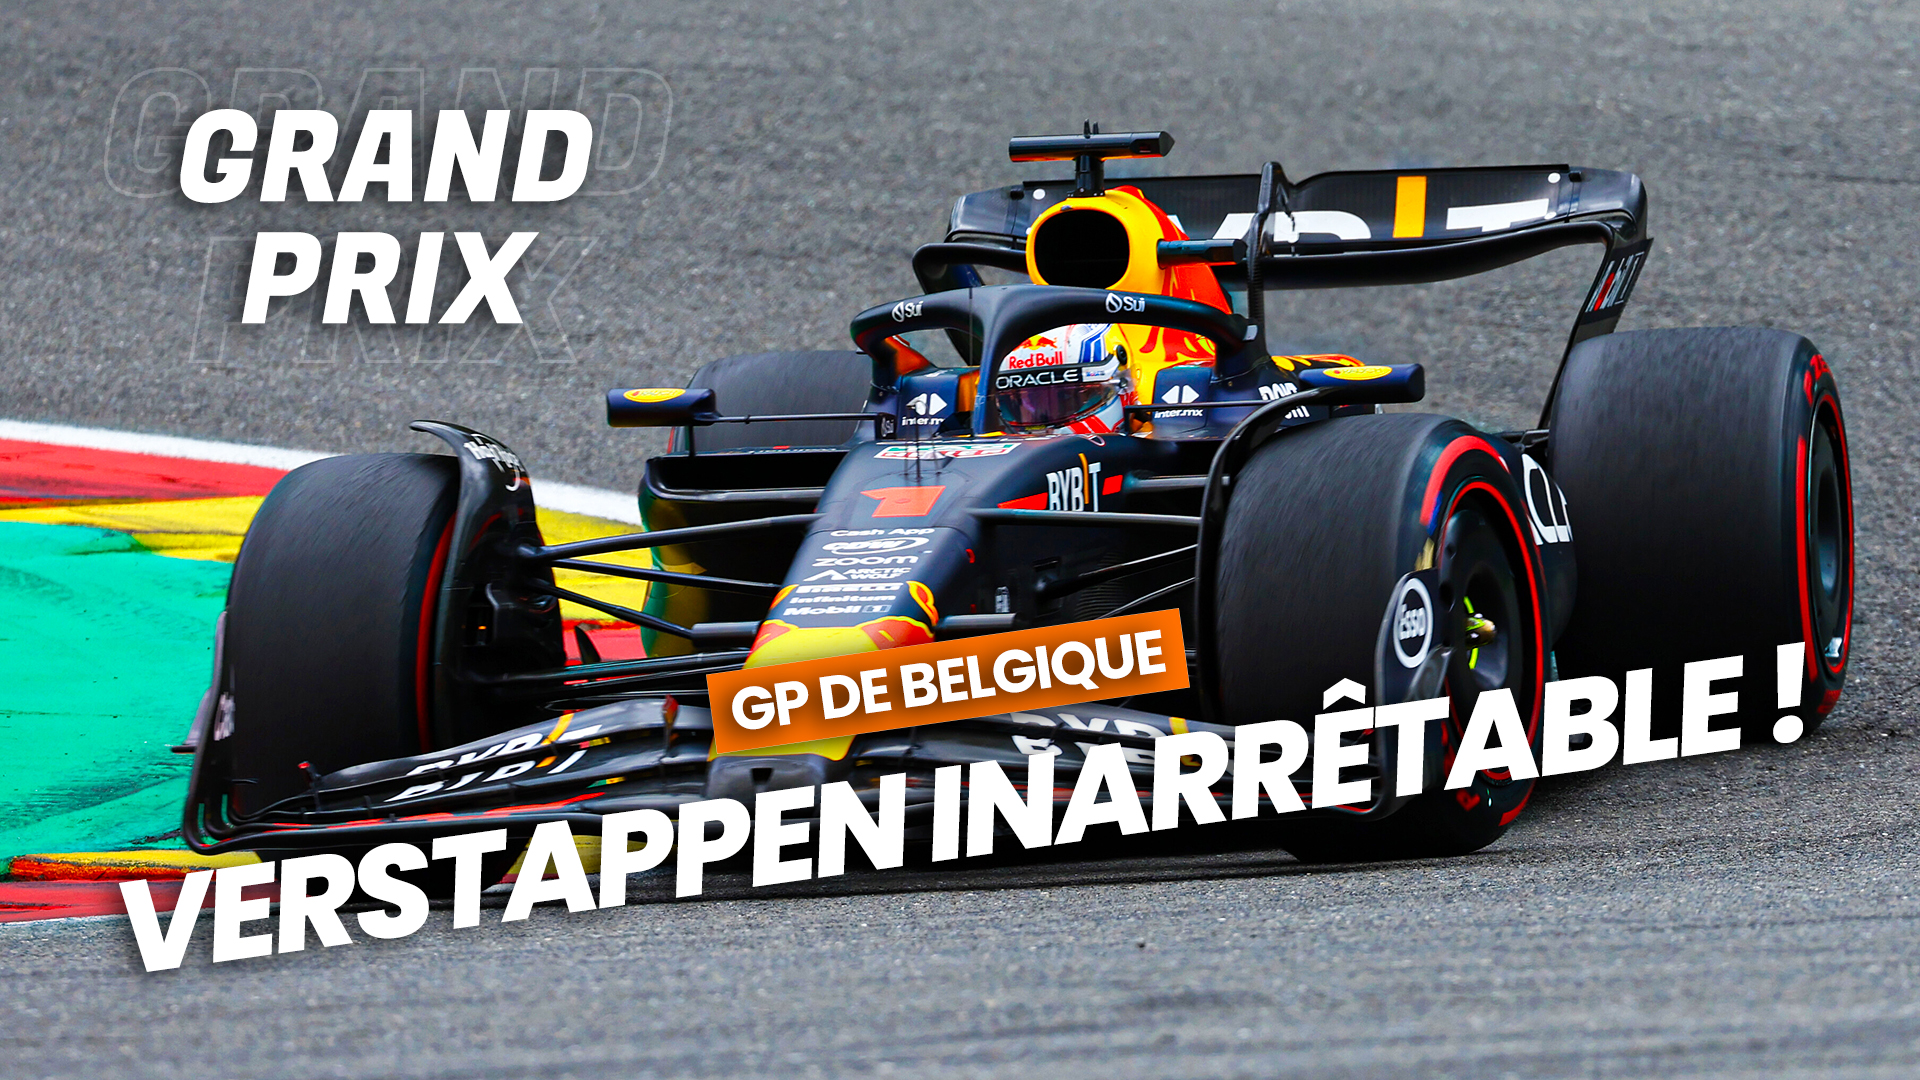 Max Verstappen inarrêtable au Grand Prix de Belgique